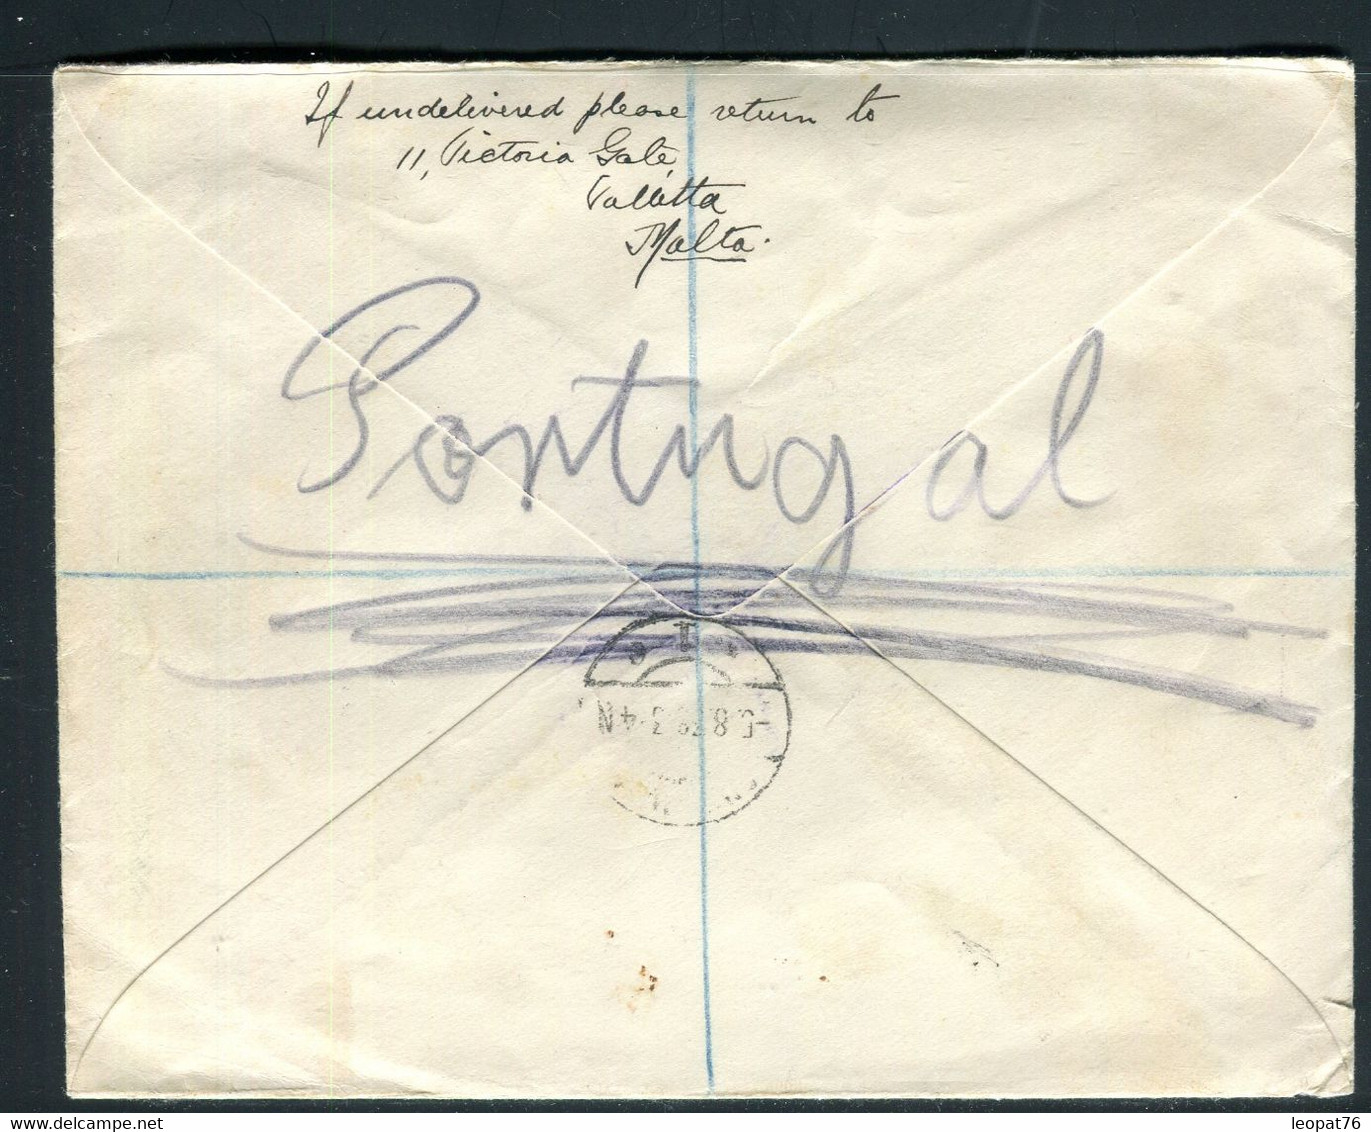 Malte - Enveloppe En Recommandé De Valletta Pour L 'Allemagne En 1938 - J 32 - Malta (...-1964)